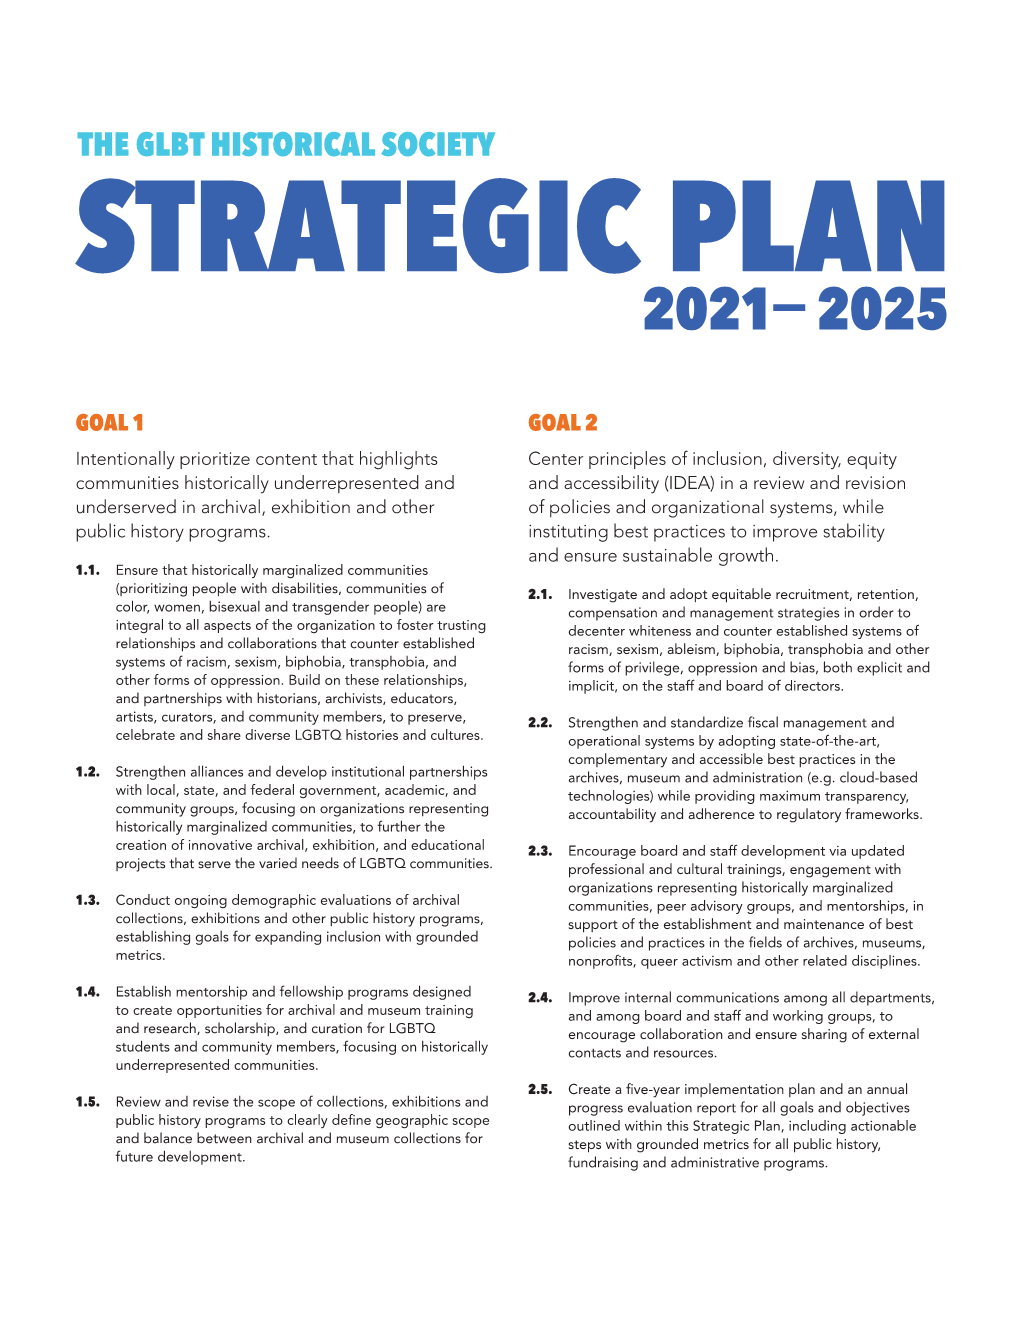 The Glbt Historical Society Strategic Plan 2021 2025